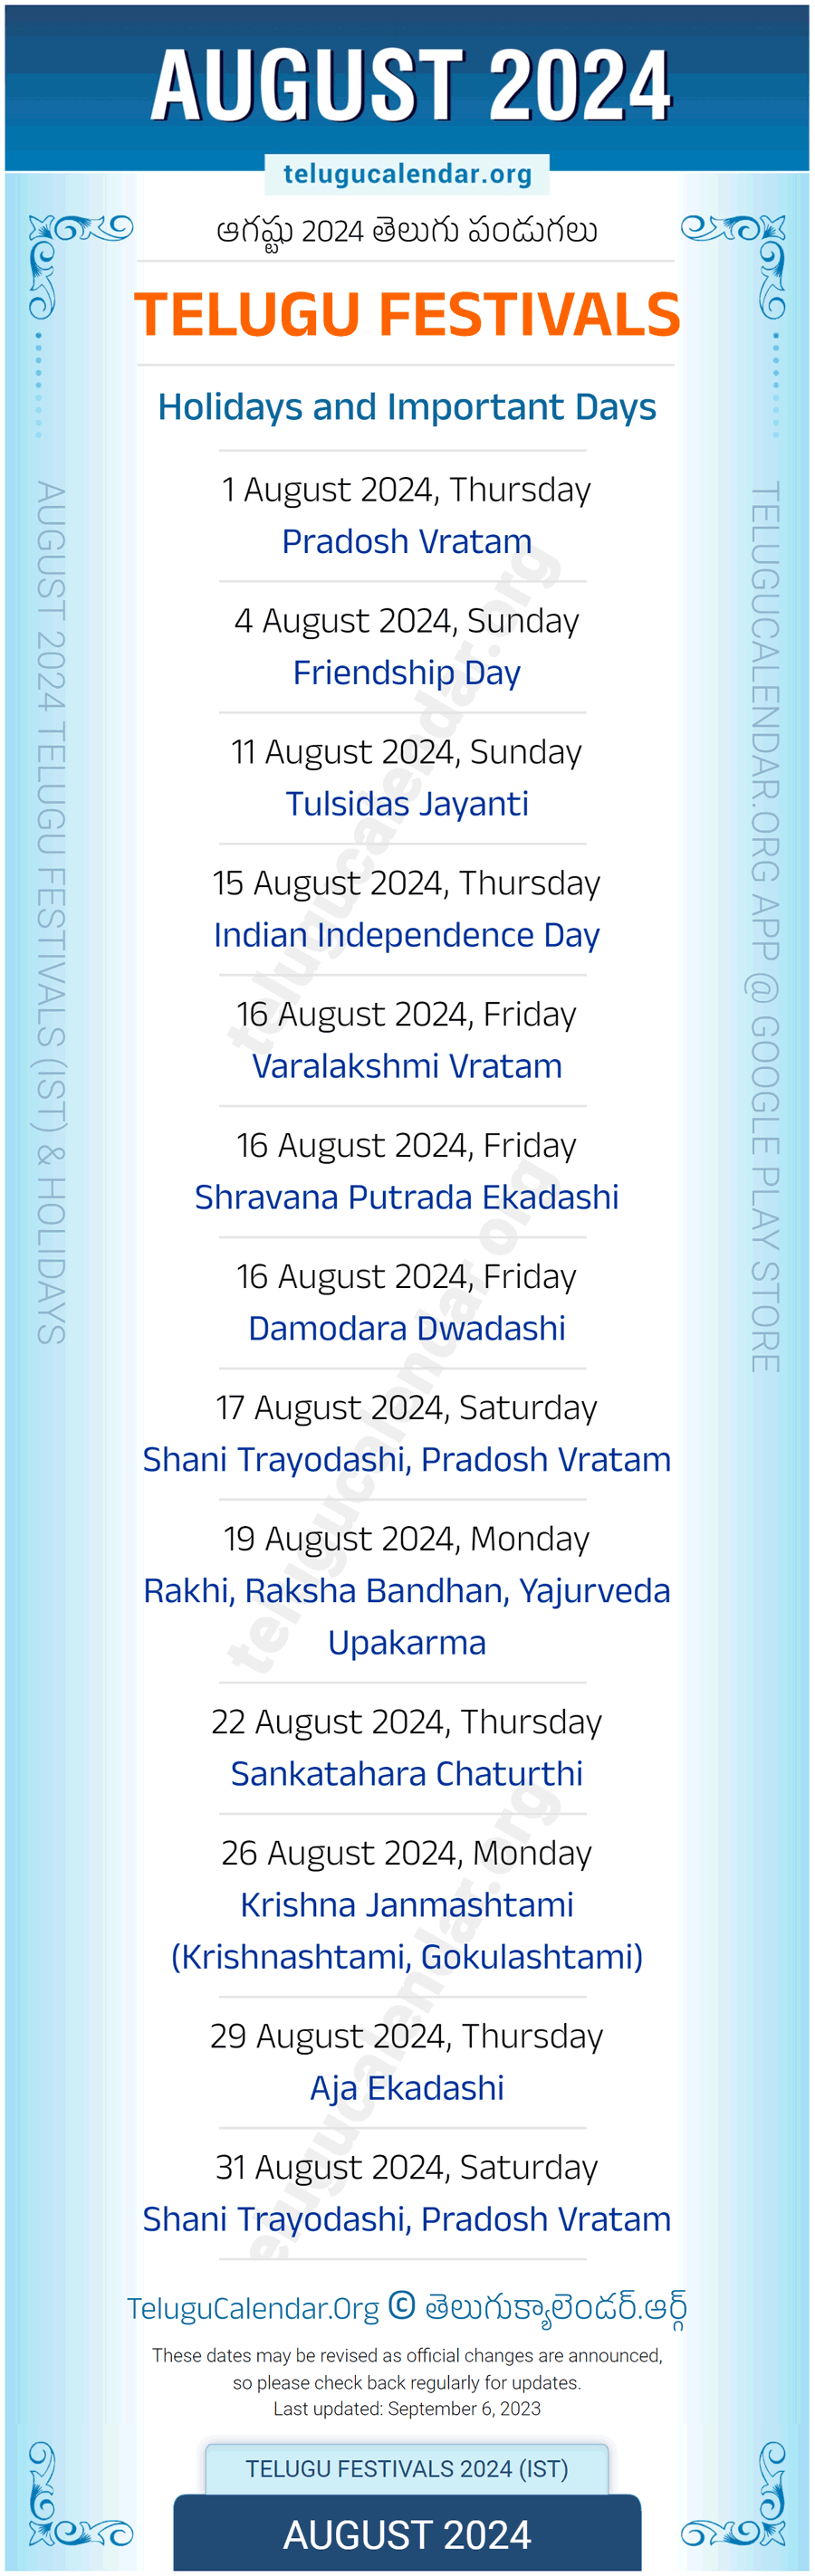 Telugu Festivals 2024 August